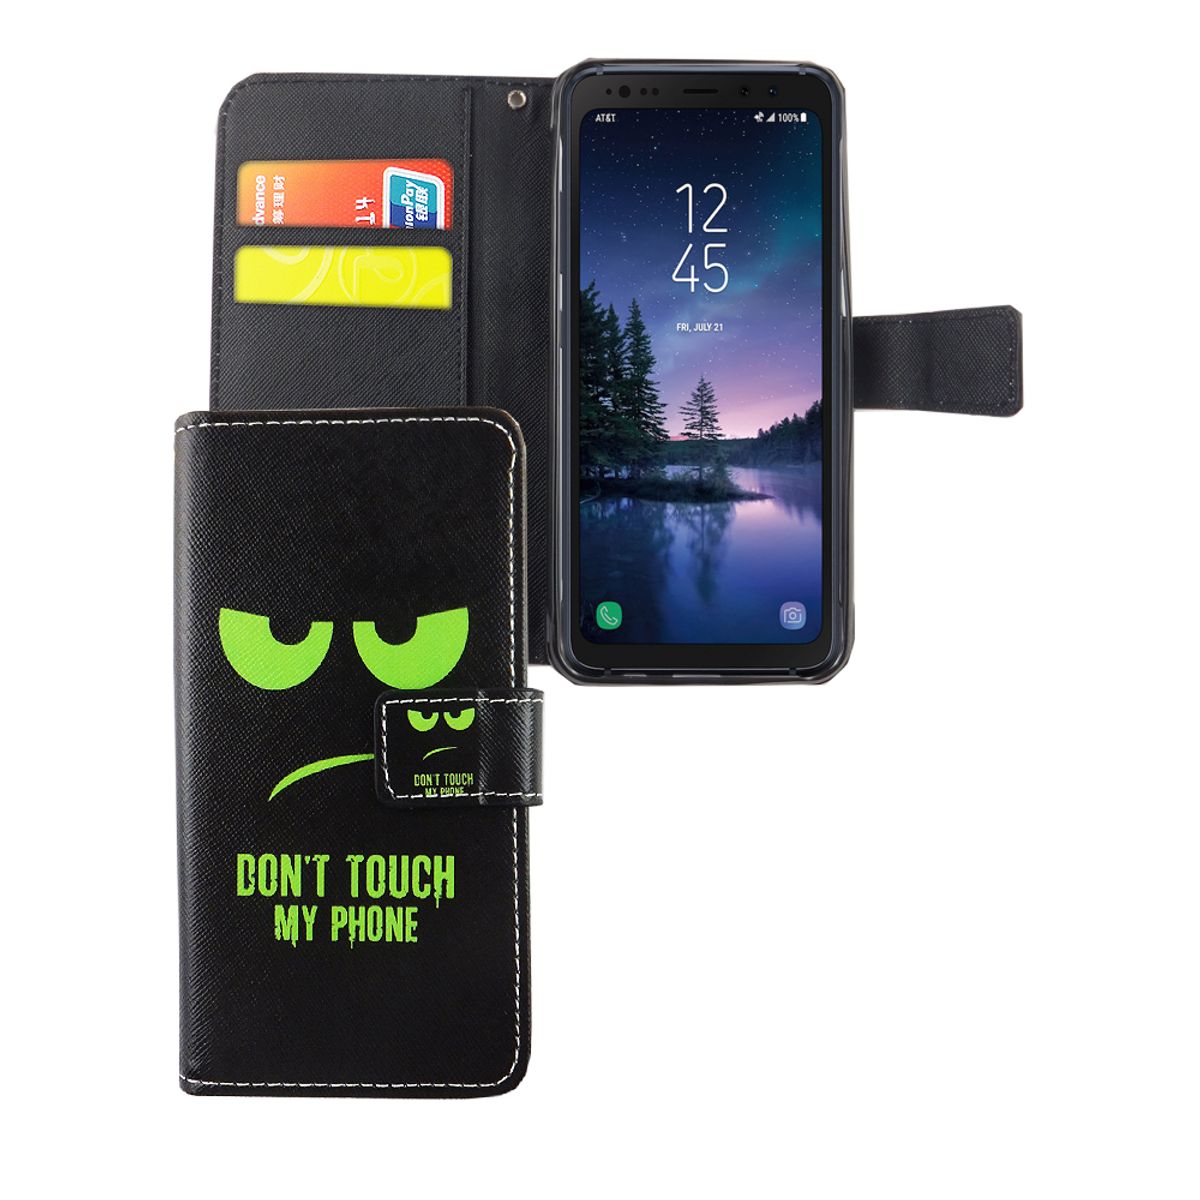 König Custodia protettiva per cellulare di design Samsung Galaxy S8 Custodia attiva per smartphone Don't Touch My Phone, design verde nero